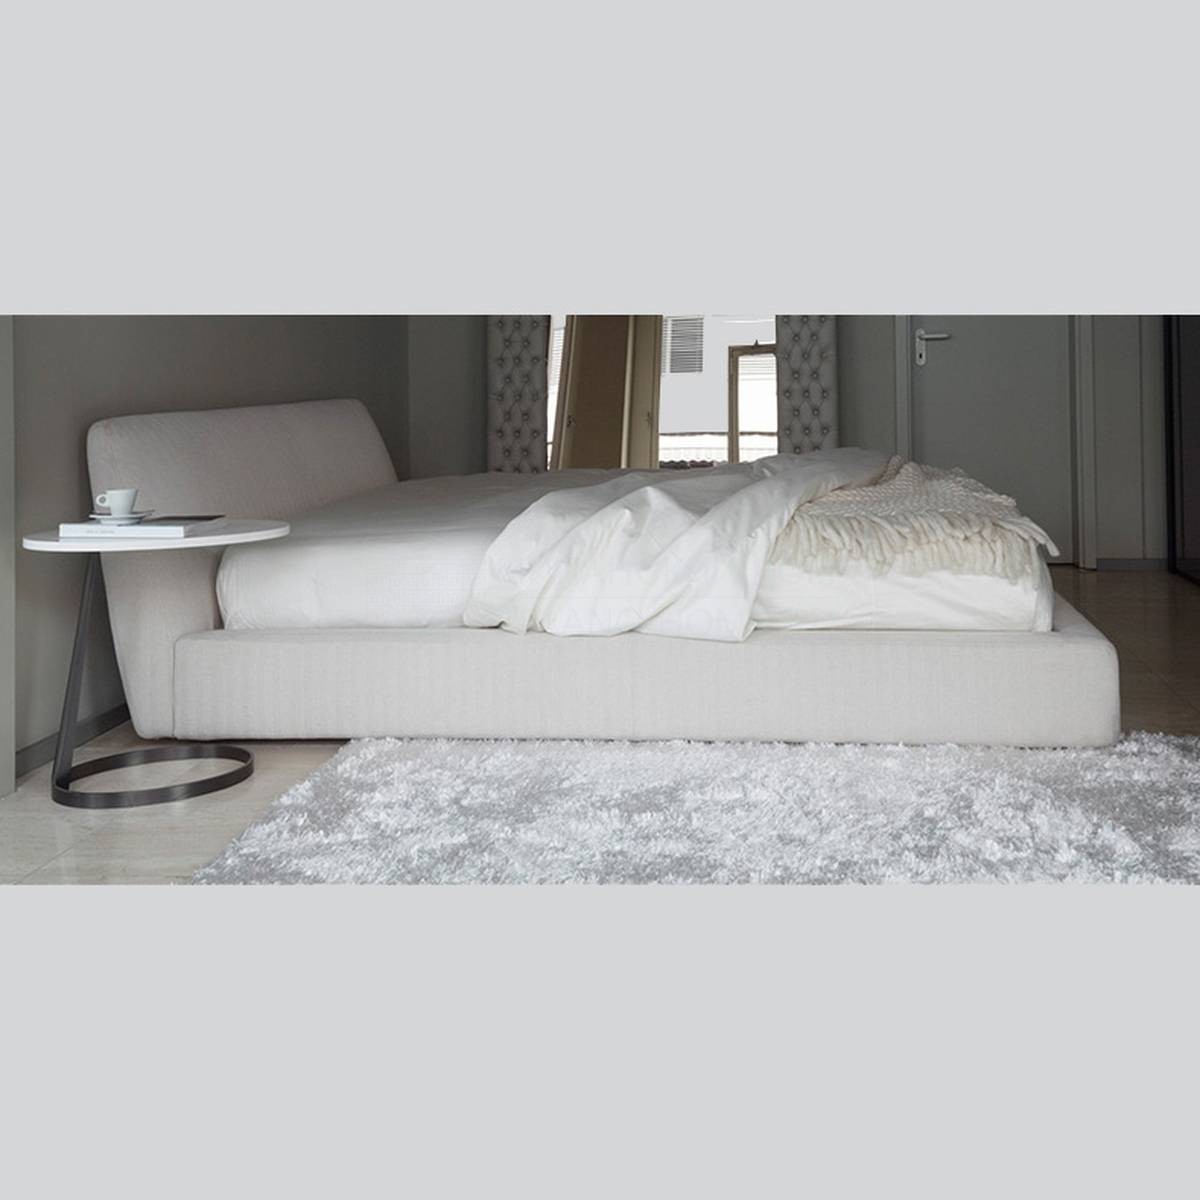 Кровать с мягким изголовьем Tender/ bed из Италии фабрики NUBE